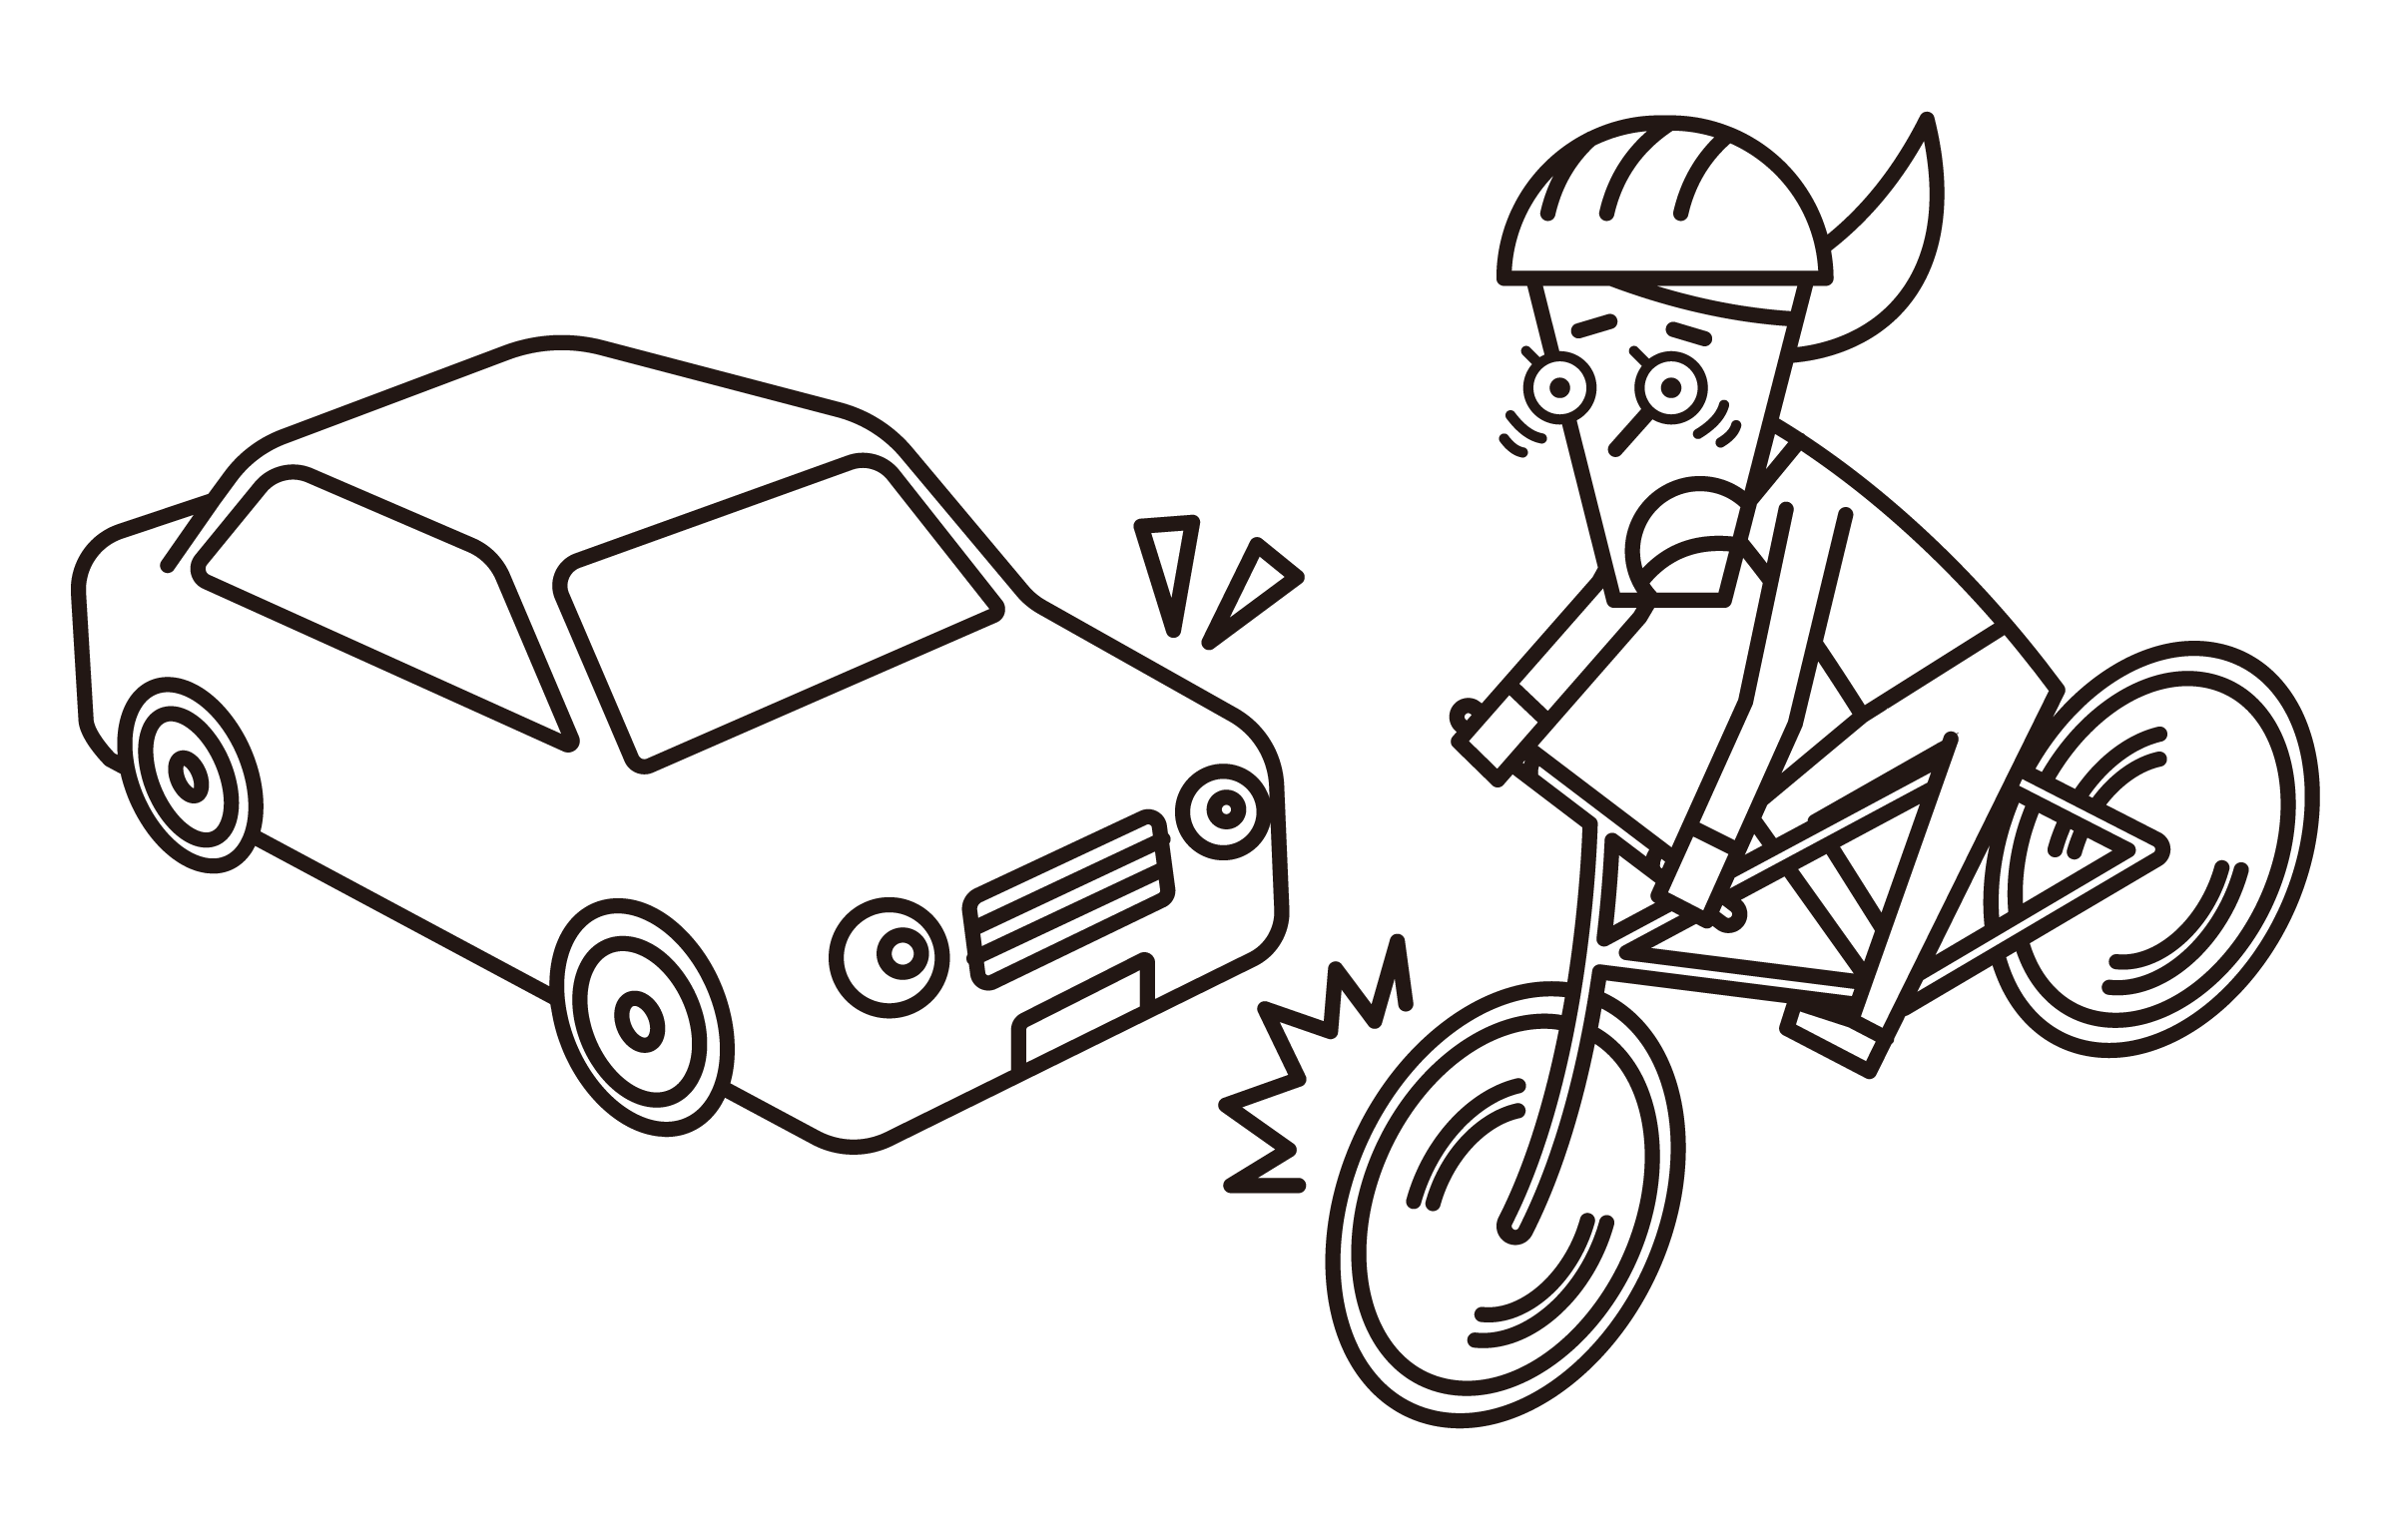 騎自行車的人（女性）的插圖，可能與汽車相撞